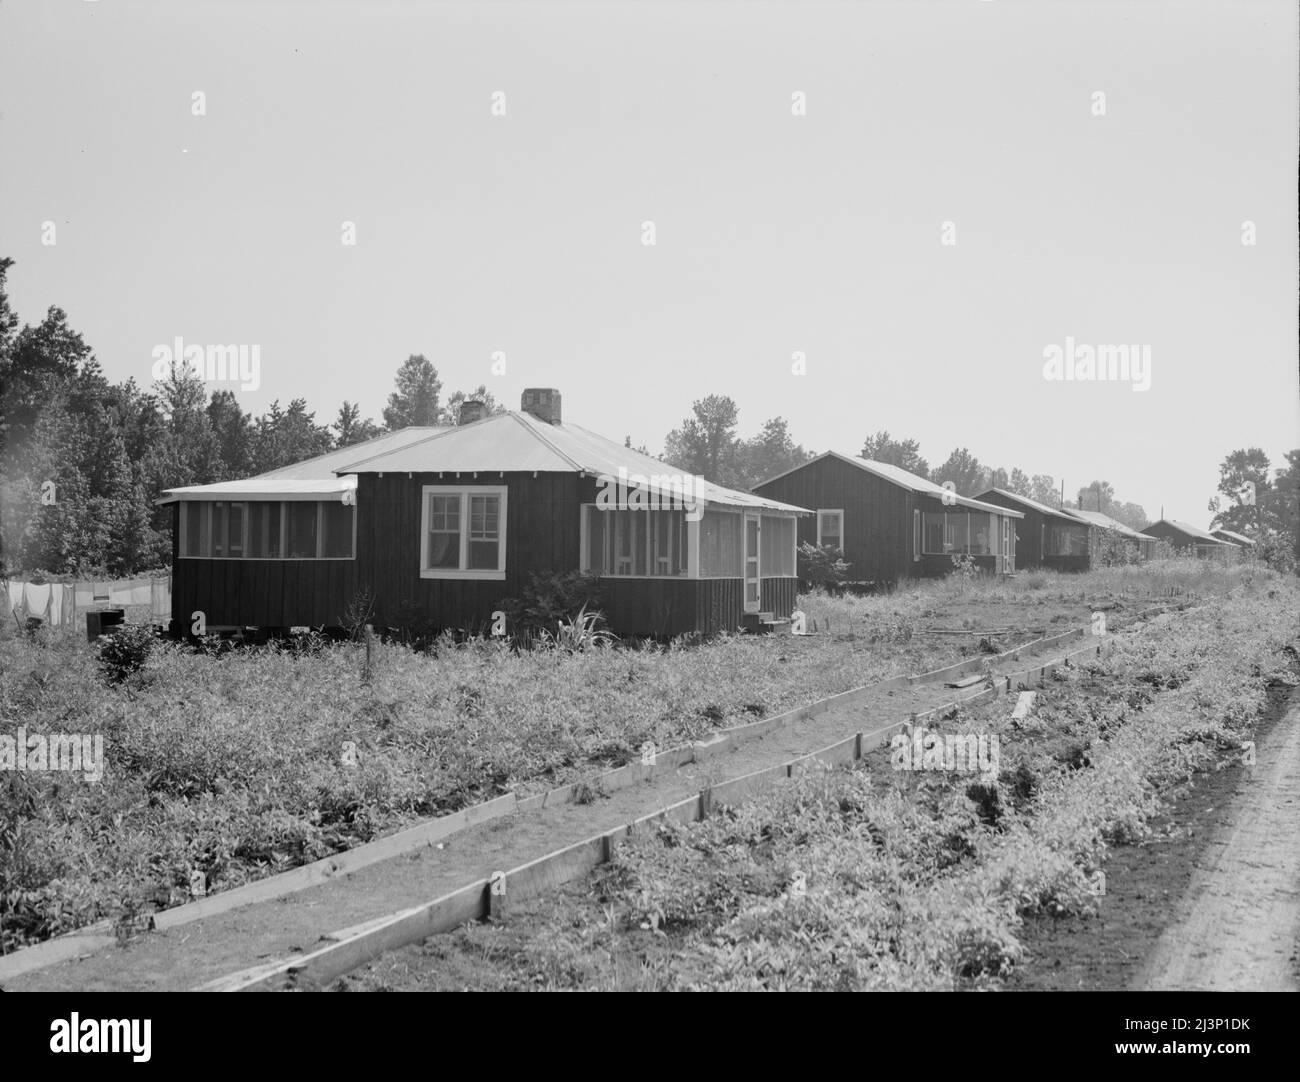 Hütten auf den Genossenschaftsfarmen von Delta. Hillhouse, Mississippi. Fensterscheiben und Veranden sind in Baumwollhütten ungewöhnlich. Stockfoto